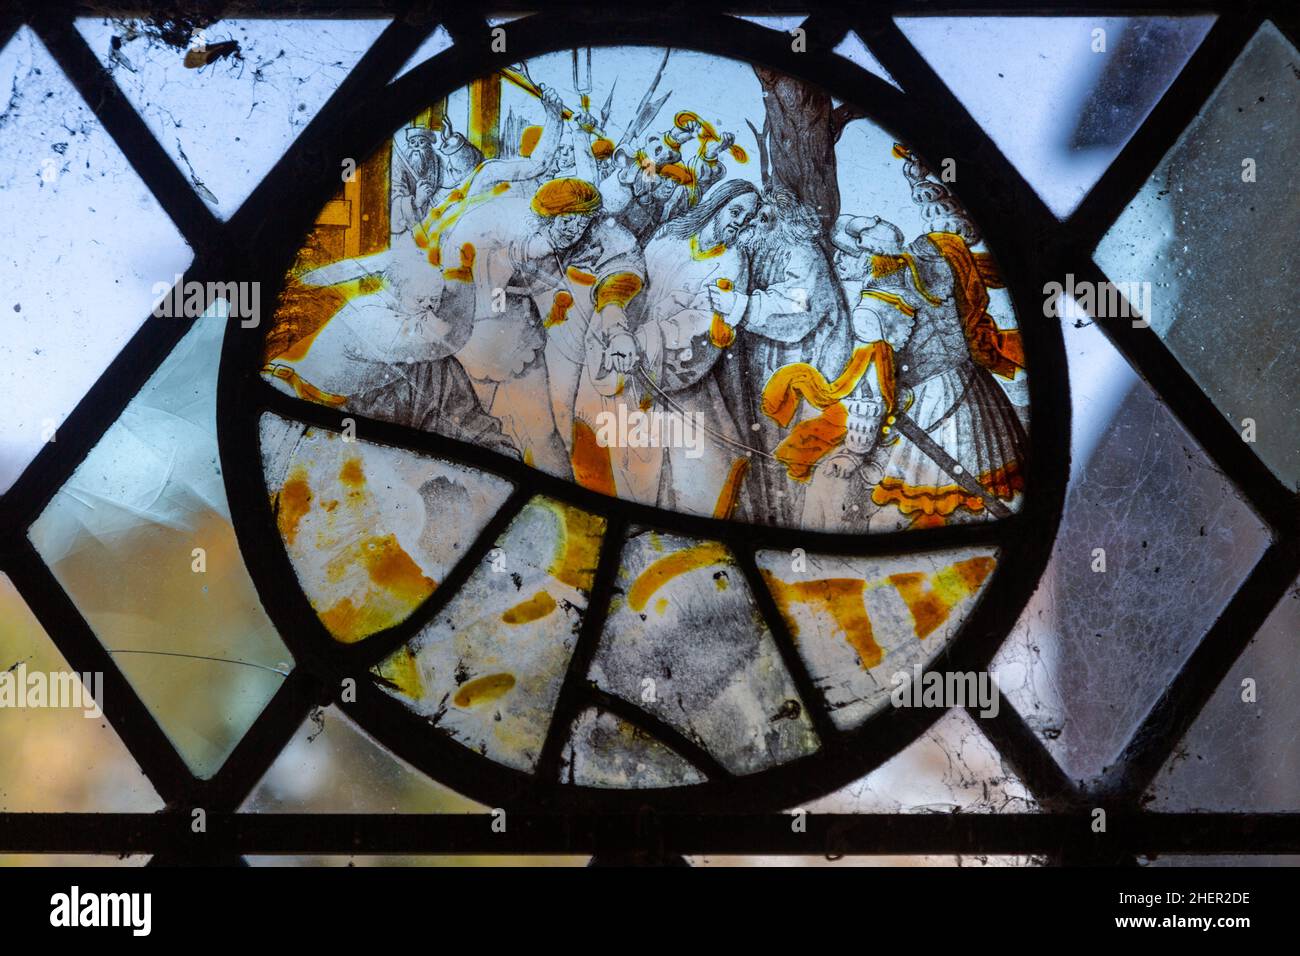 Fragments médiévaux de vitraux dans la fenêtre de l'église, Polstead, Suffolk, Angleterre, Royaume-Uni Judas trahir Jésus avec un baiser Banque D'Images